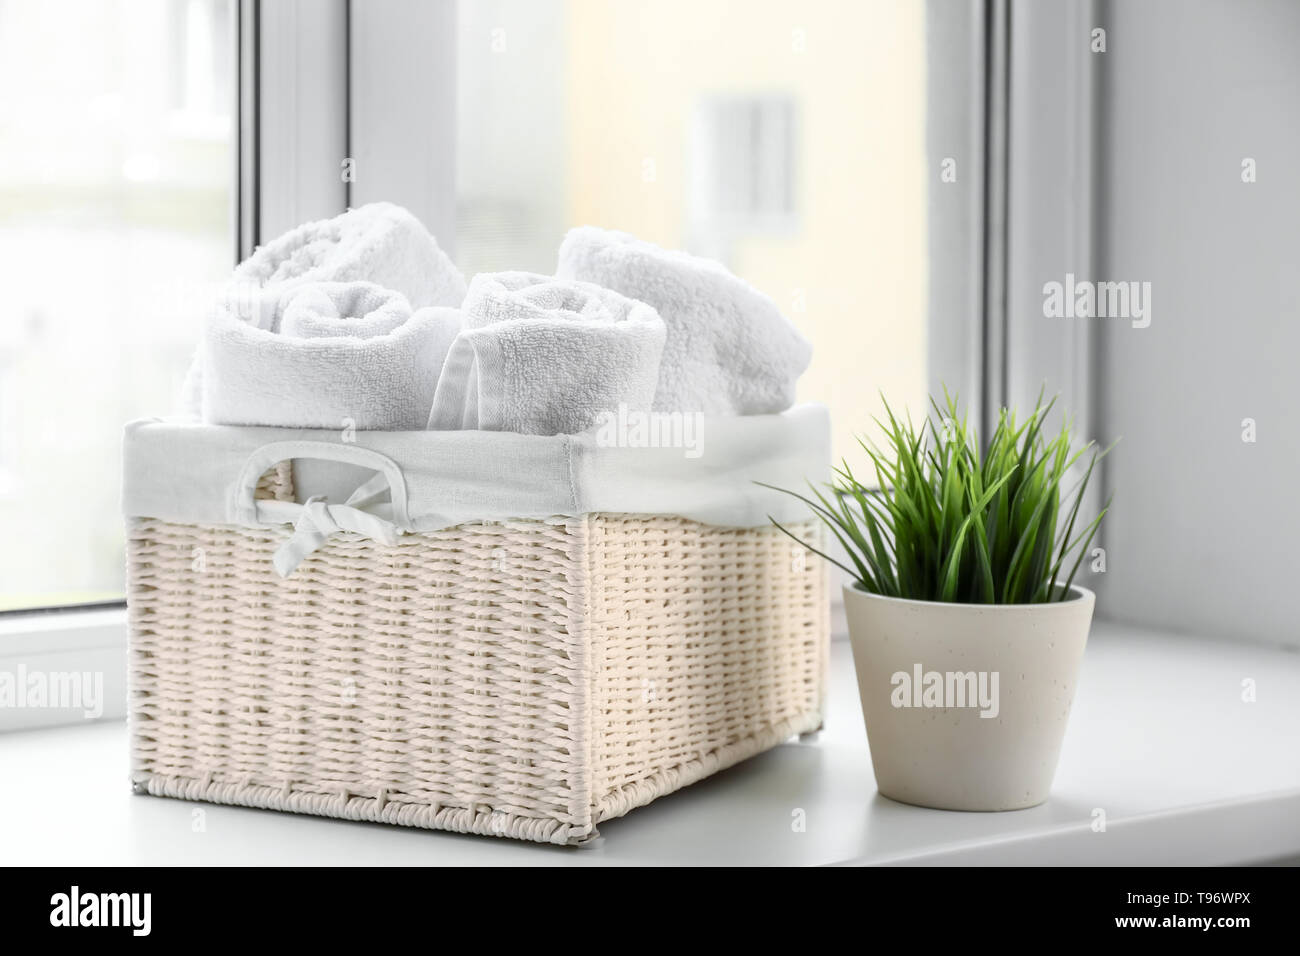 Korb mit weißem Frottee Handtücher auf die Fensterbank Stockfotografie -  Alamy